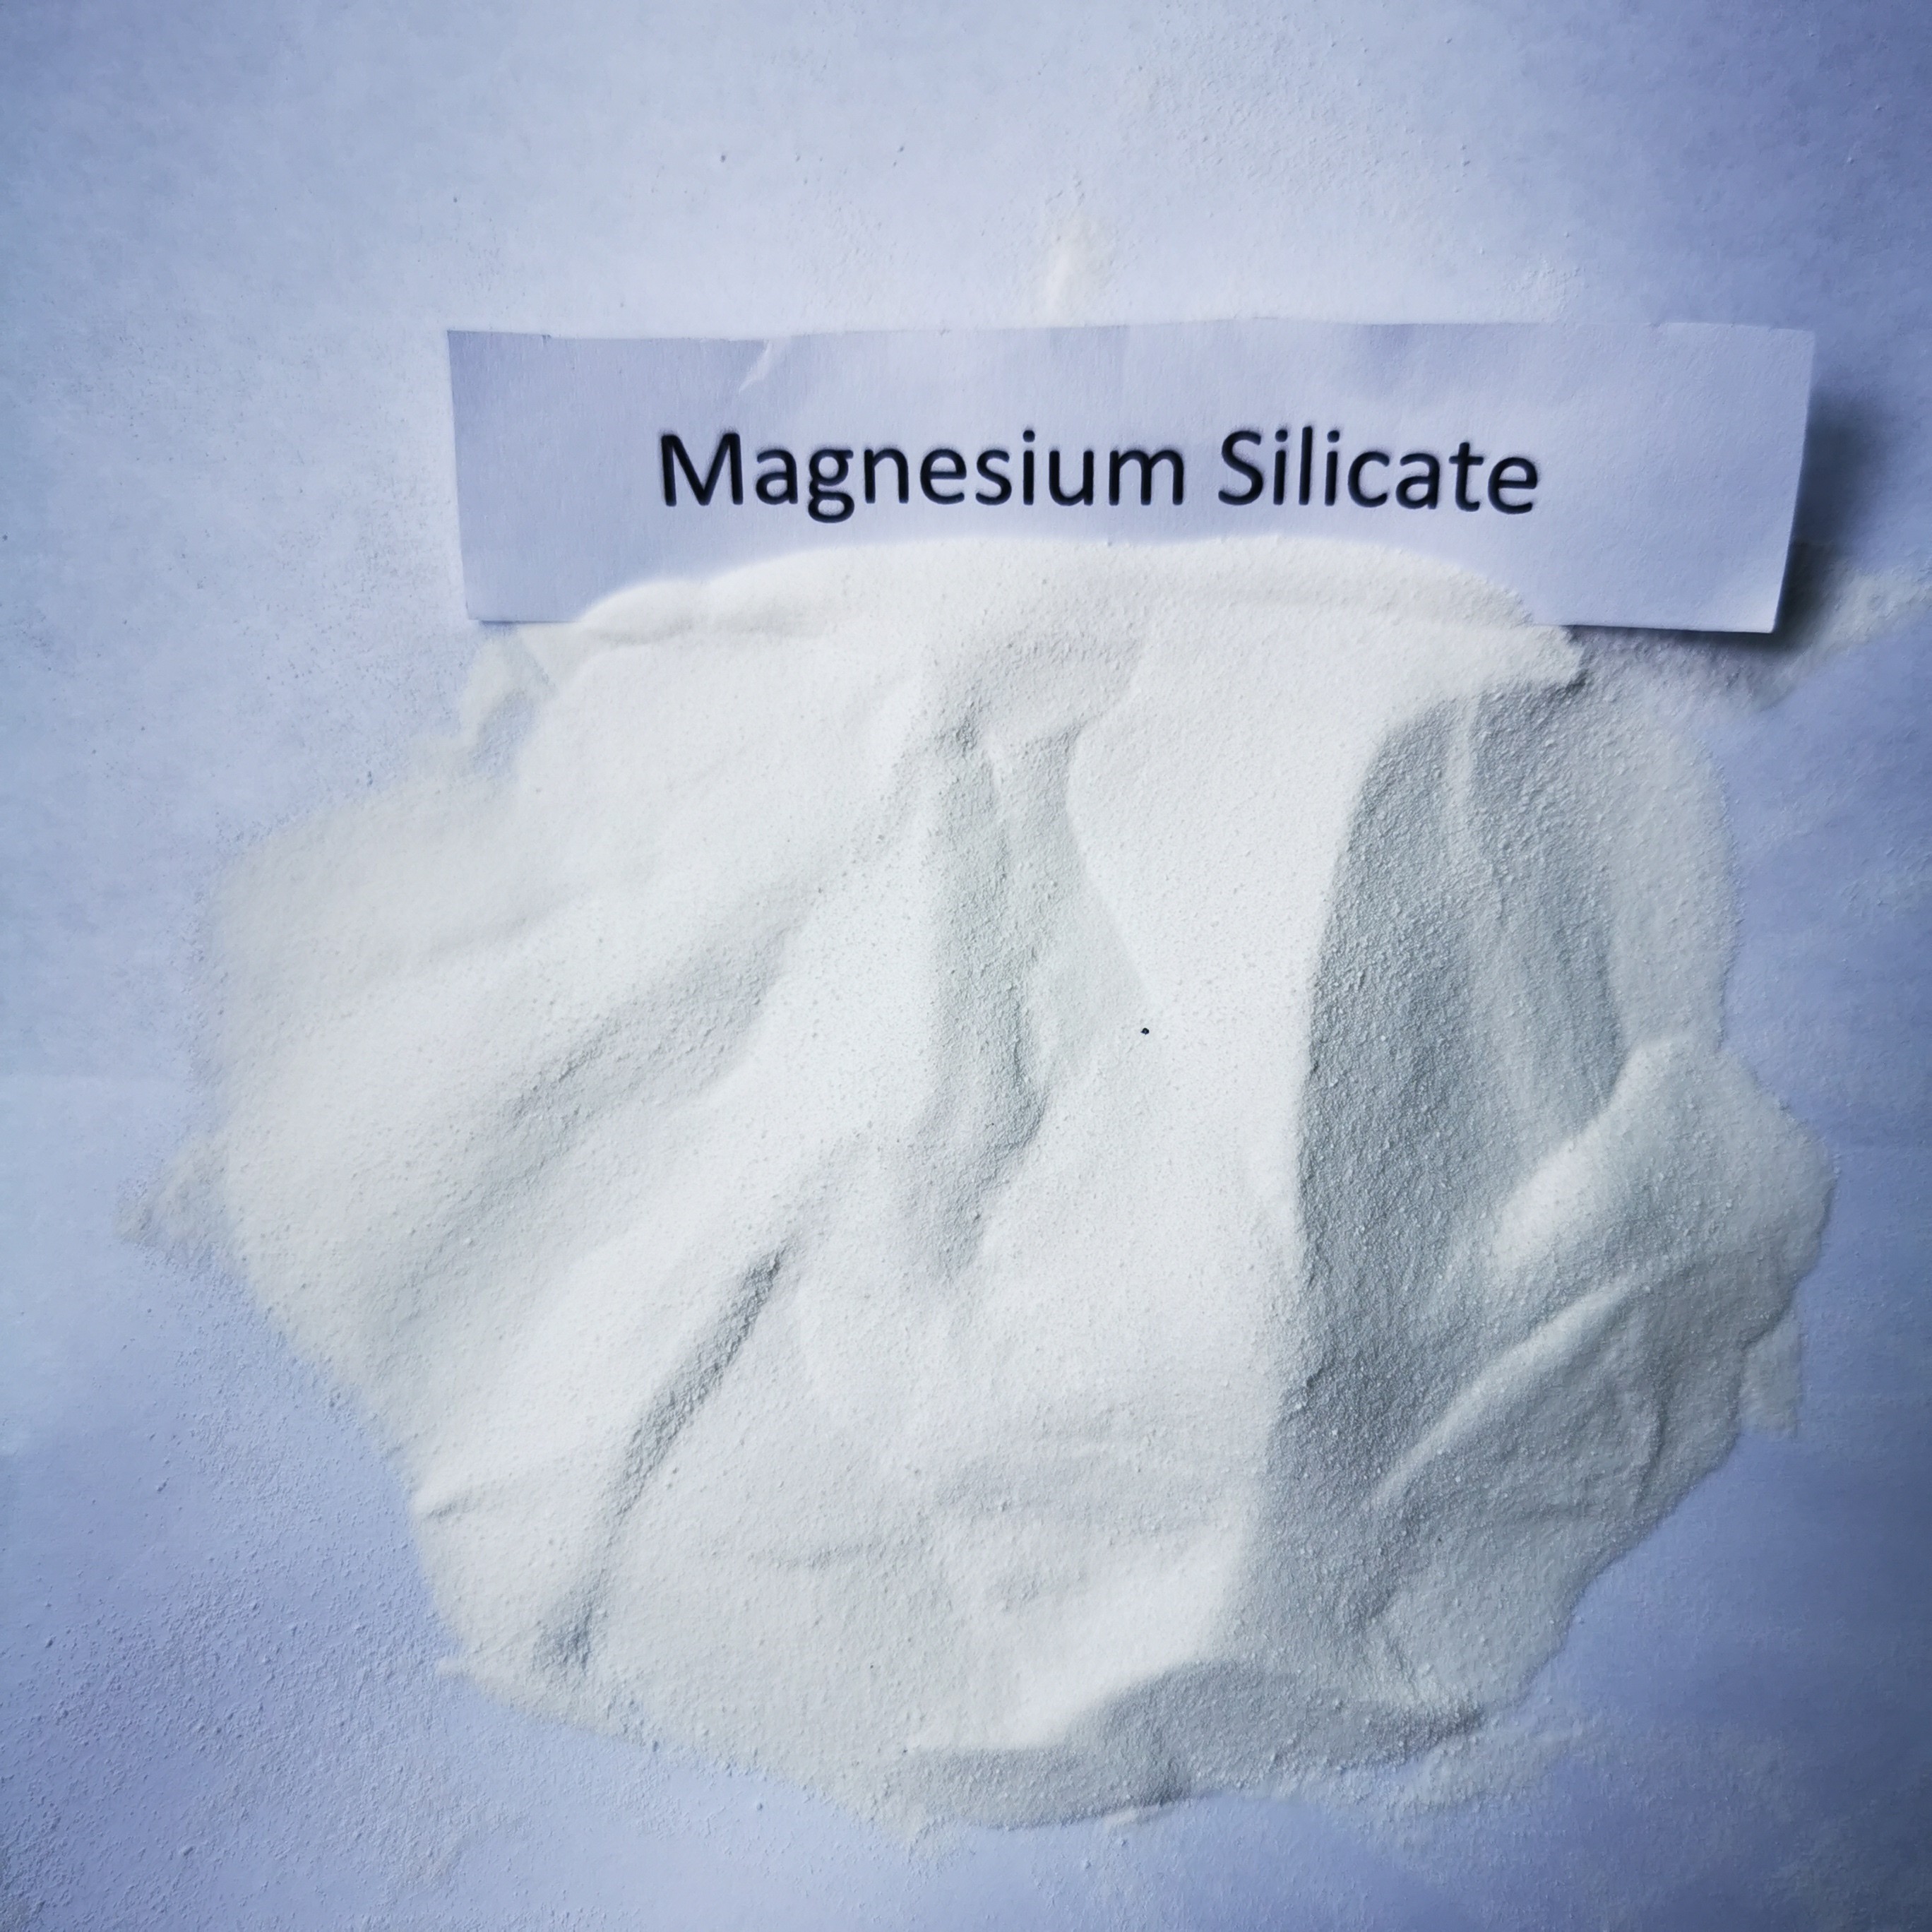 مادة السيليكات المغنيسيوم المستخدمة في صناعة البوليول